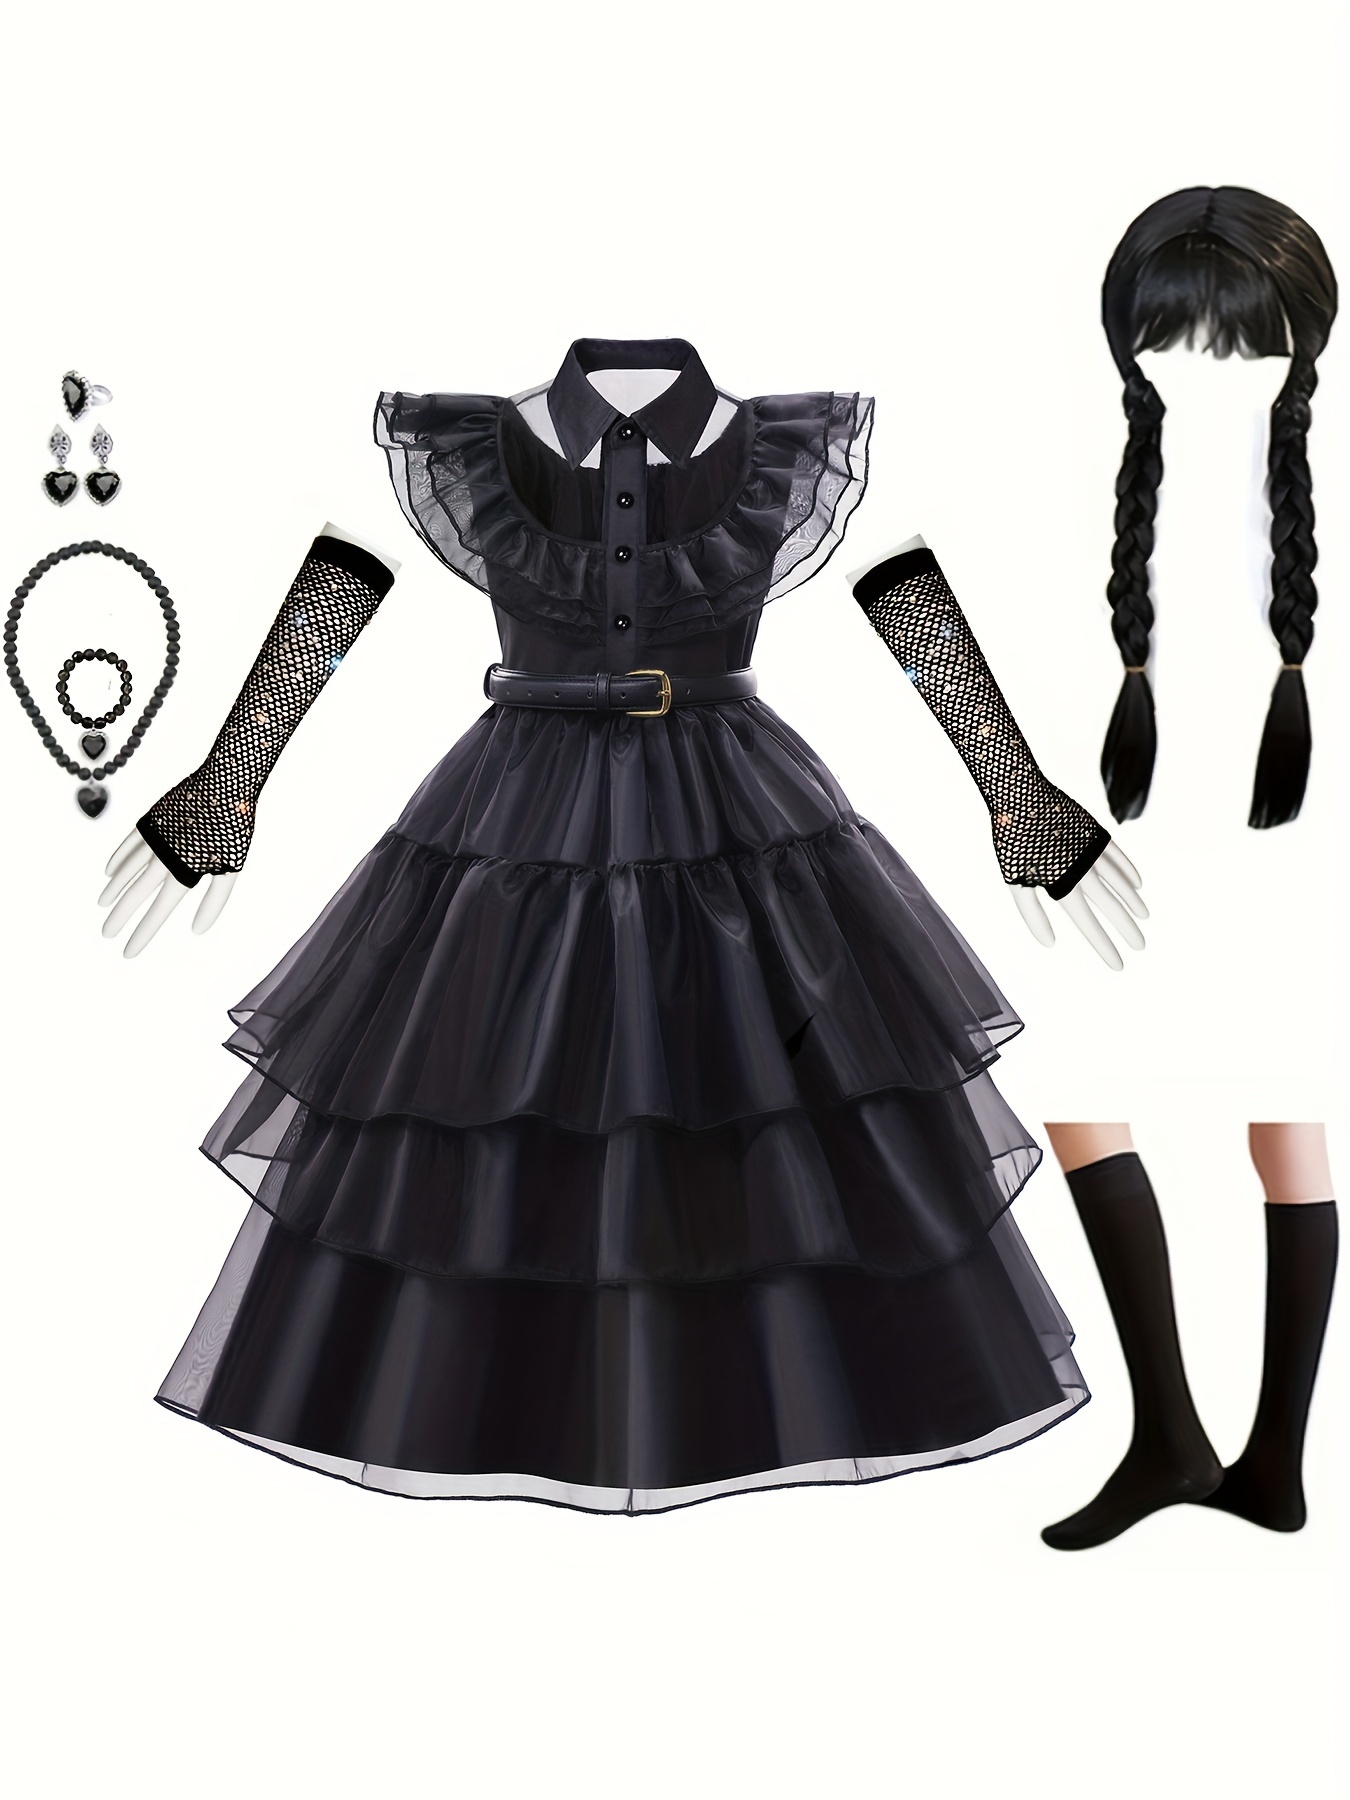 Sheer Black Gothic Bodysuit Adult Onesie Dark Fashion